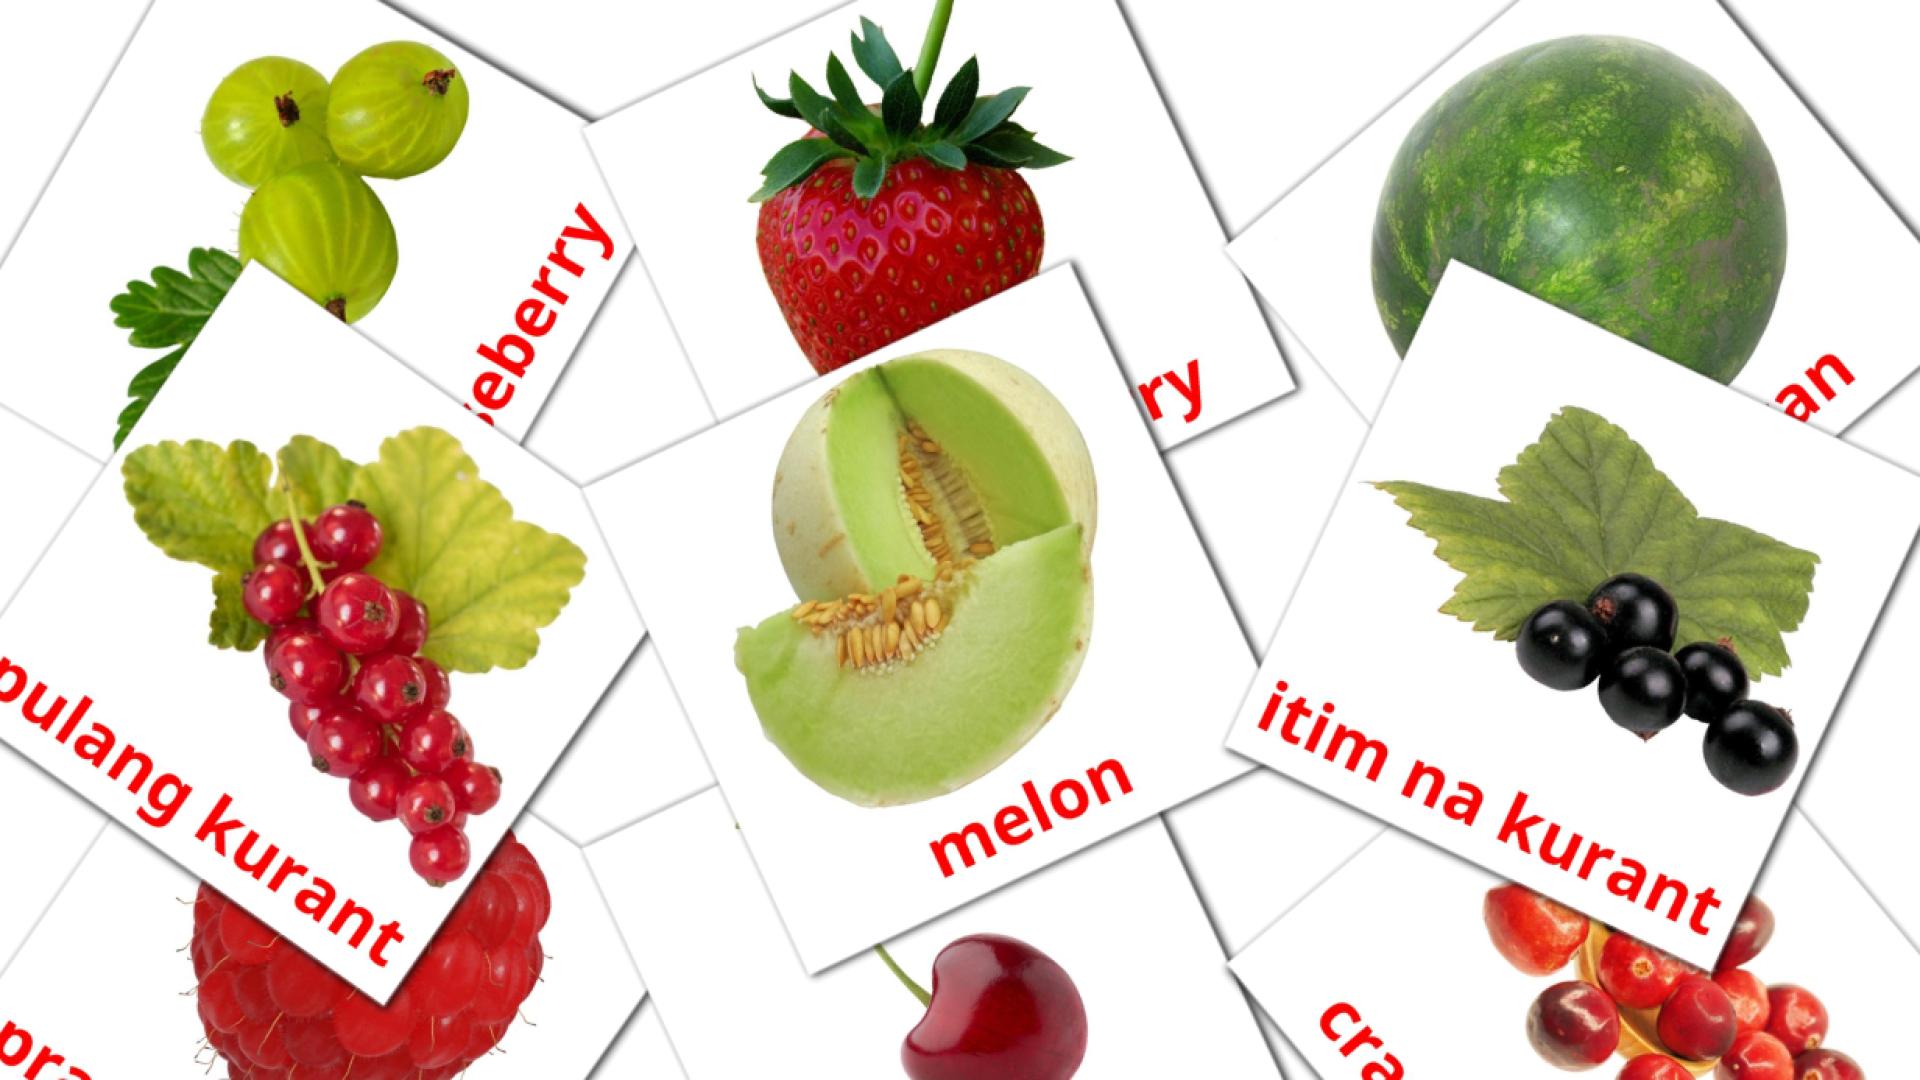 11 Bildkarten für Berries